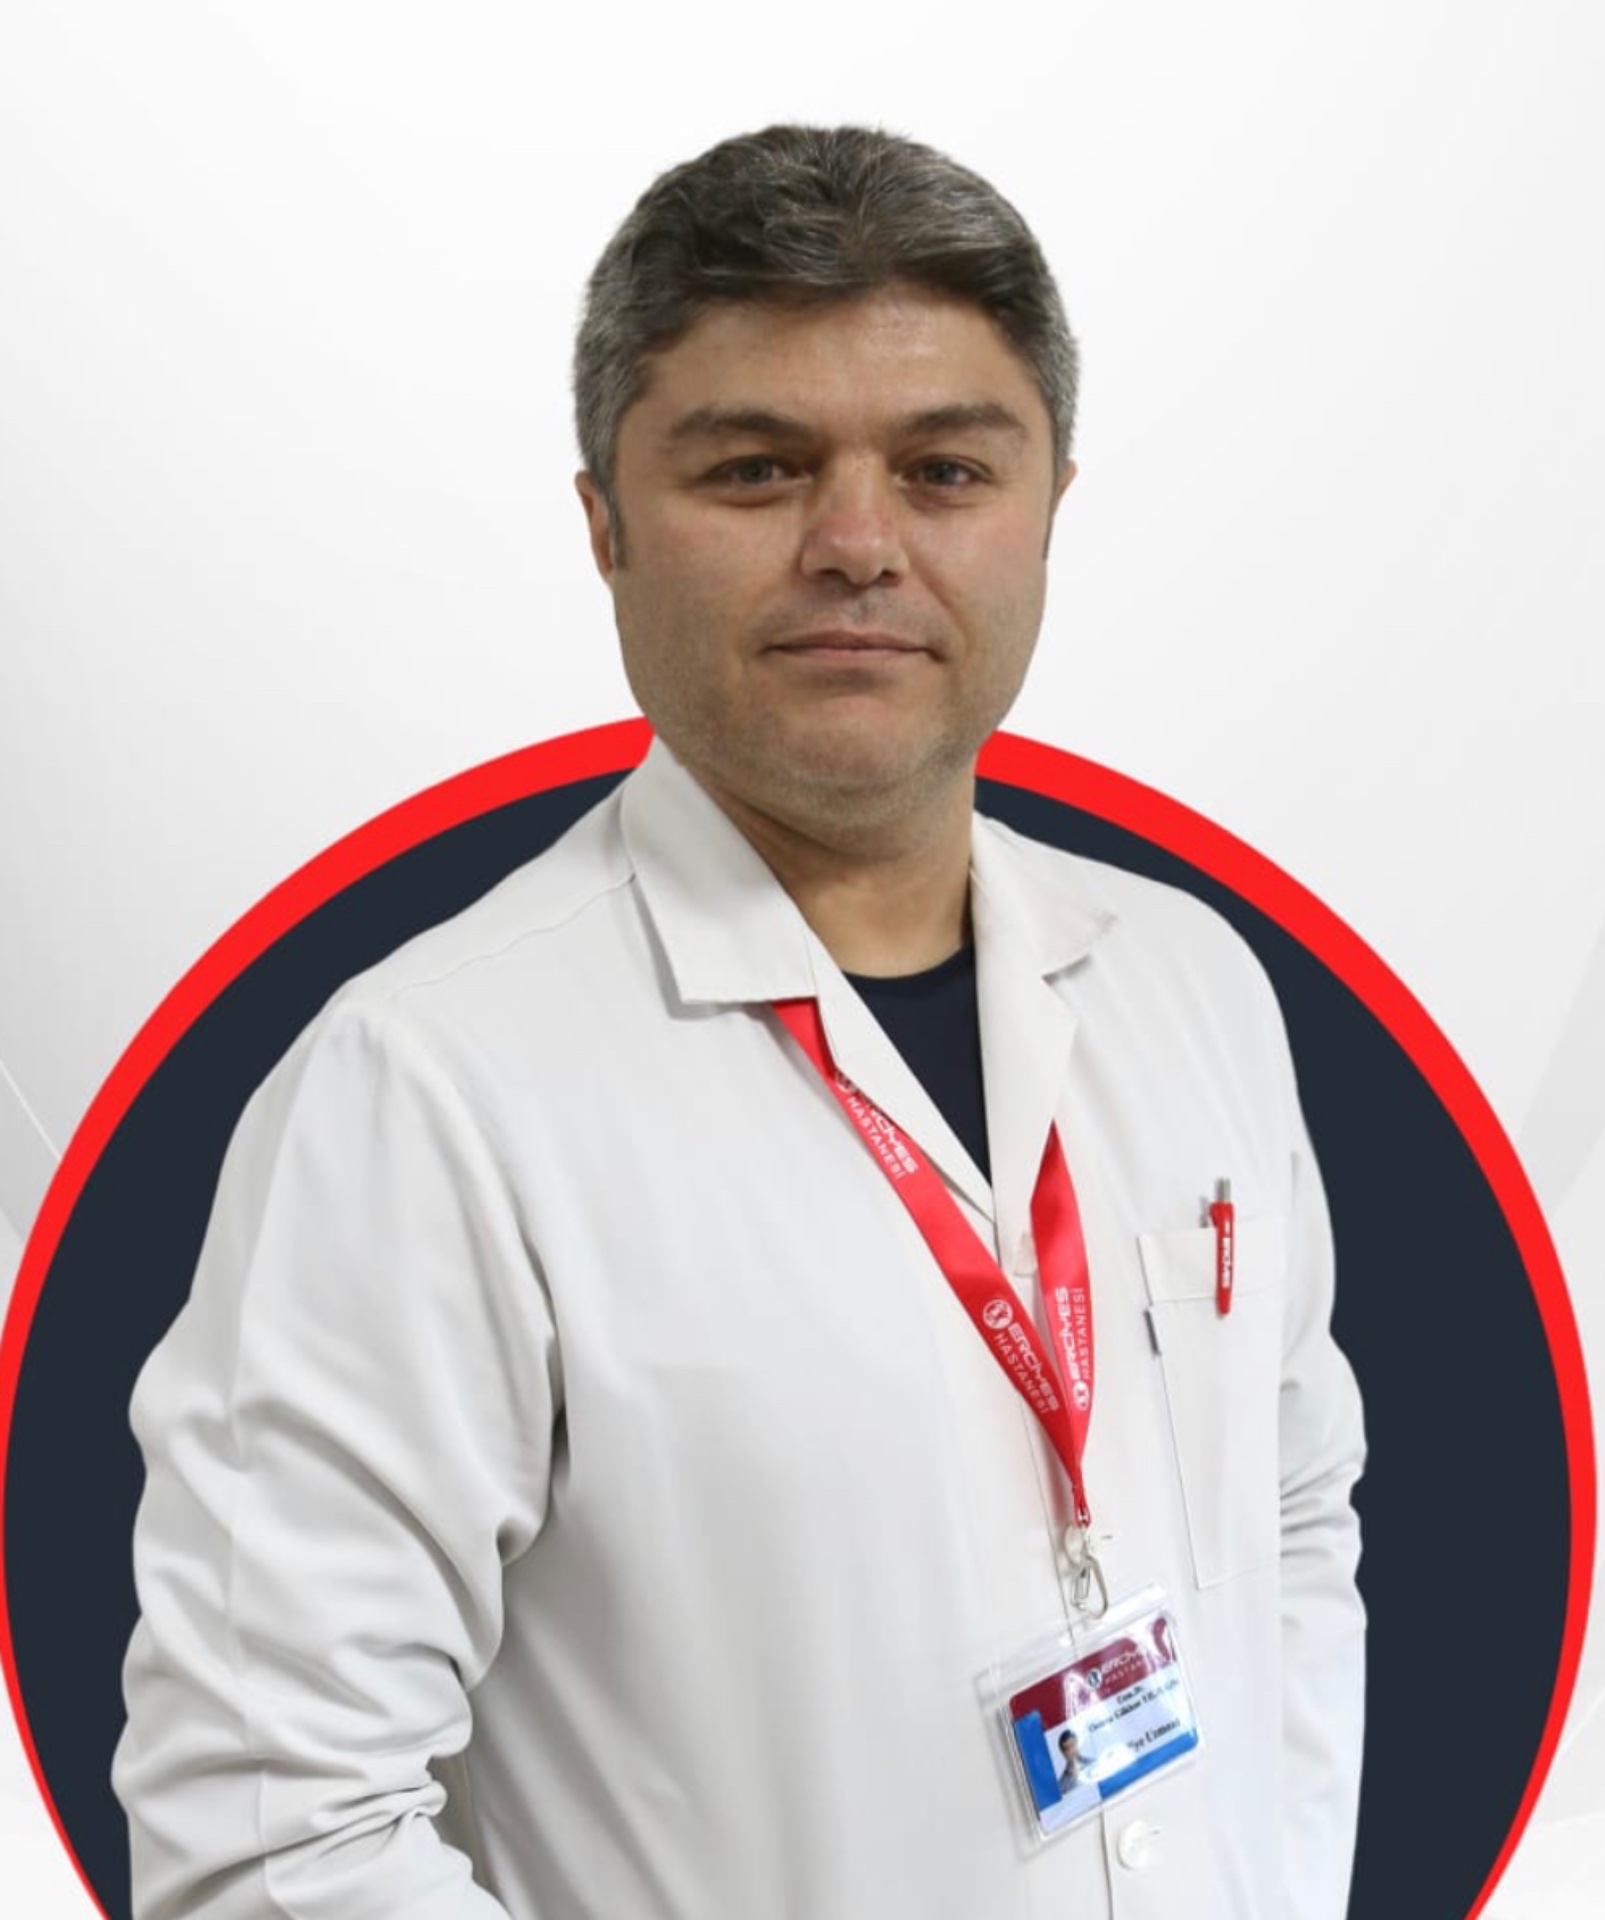 Uzm. Dr. Osman Gökhan Yıldırım